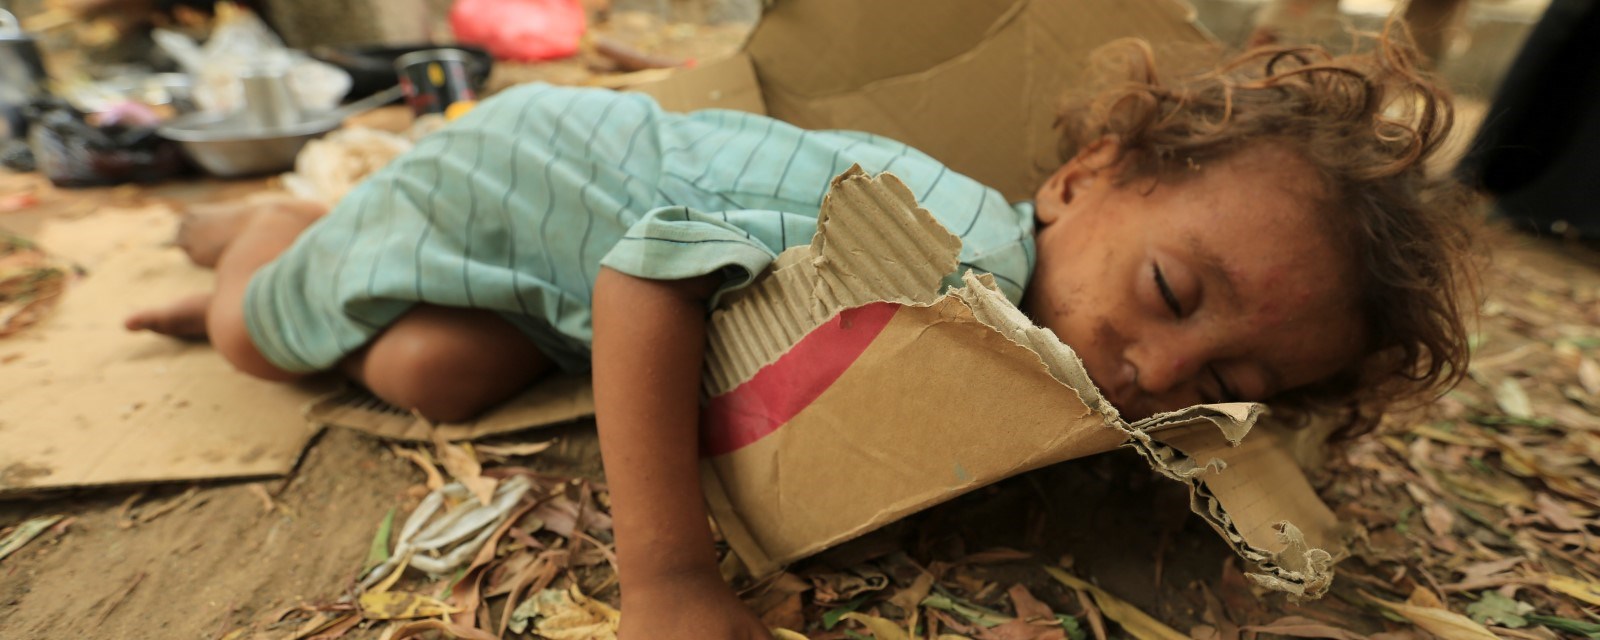 En jente ligger og sover på en pappeske. I bakgrunnen et bål med en kjele